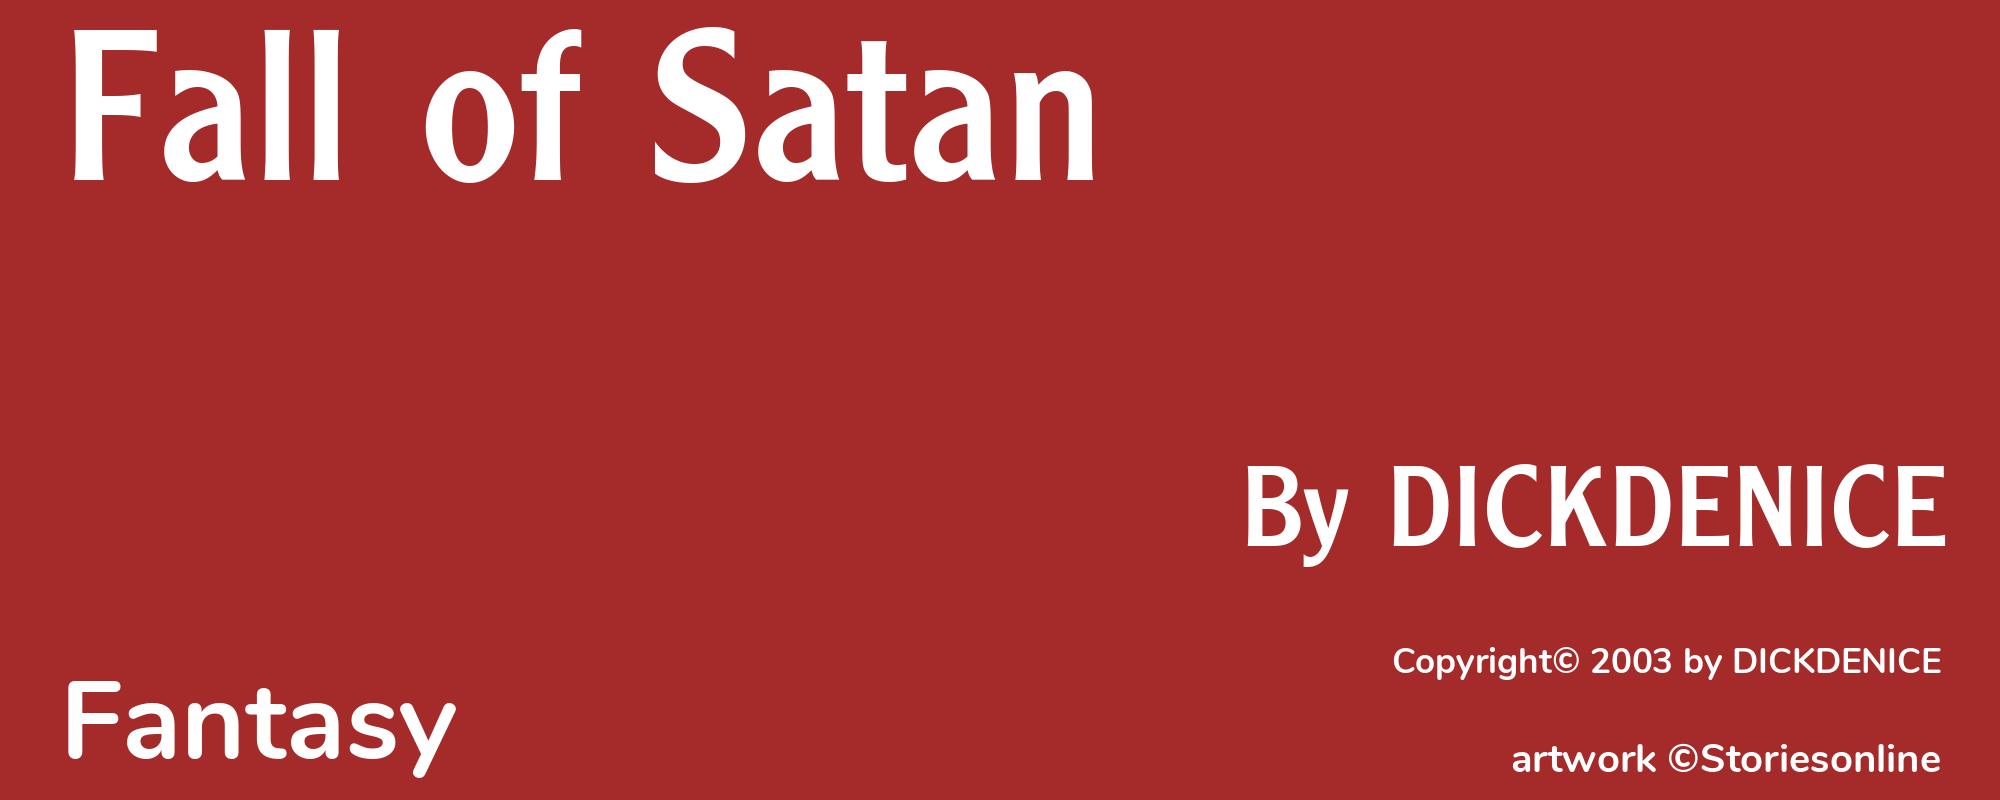 Fall of Satan - Cover